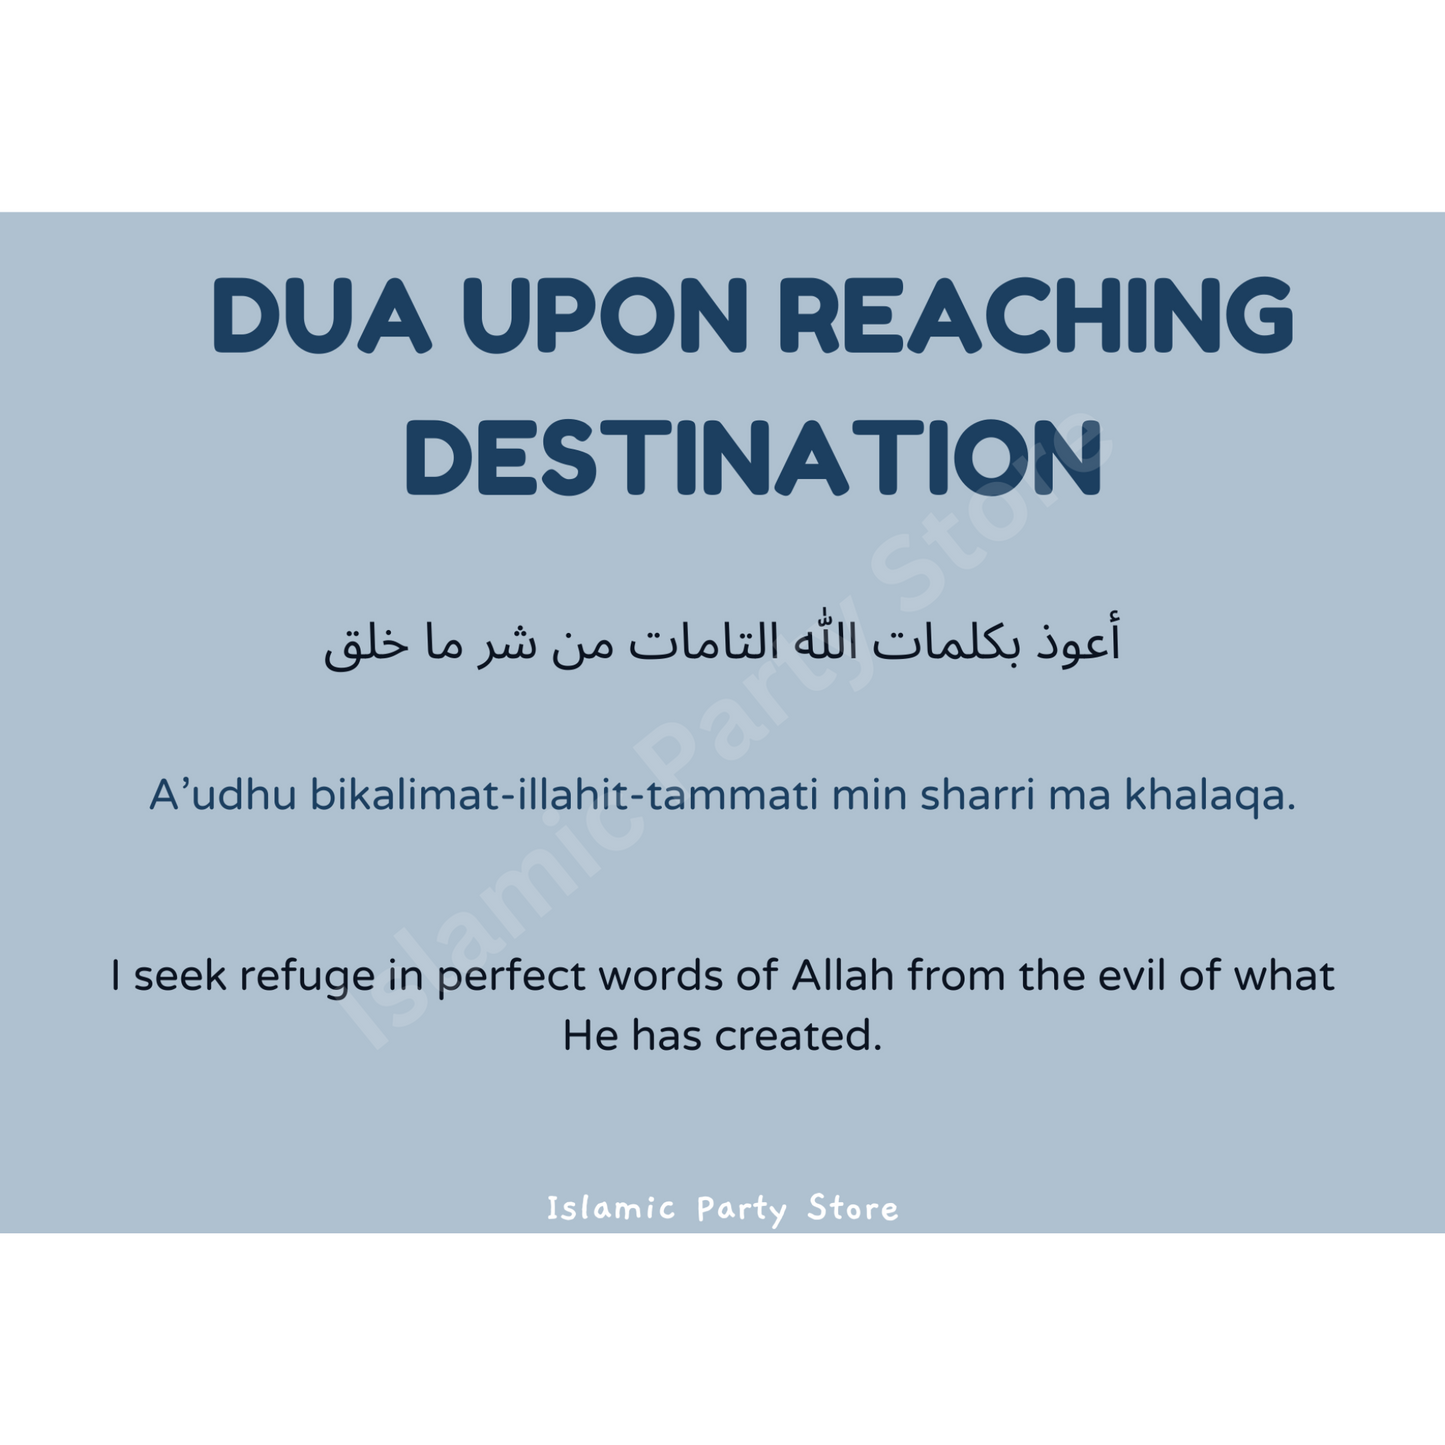 Upon Reaching Destination Dua